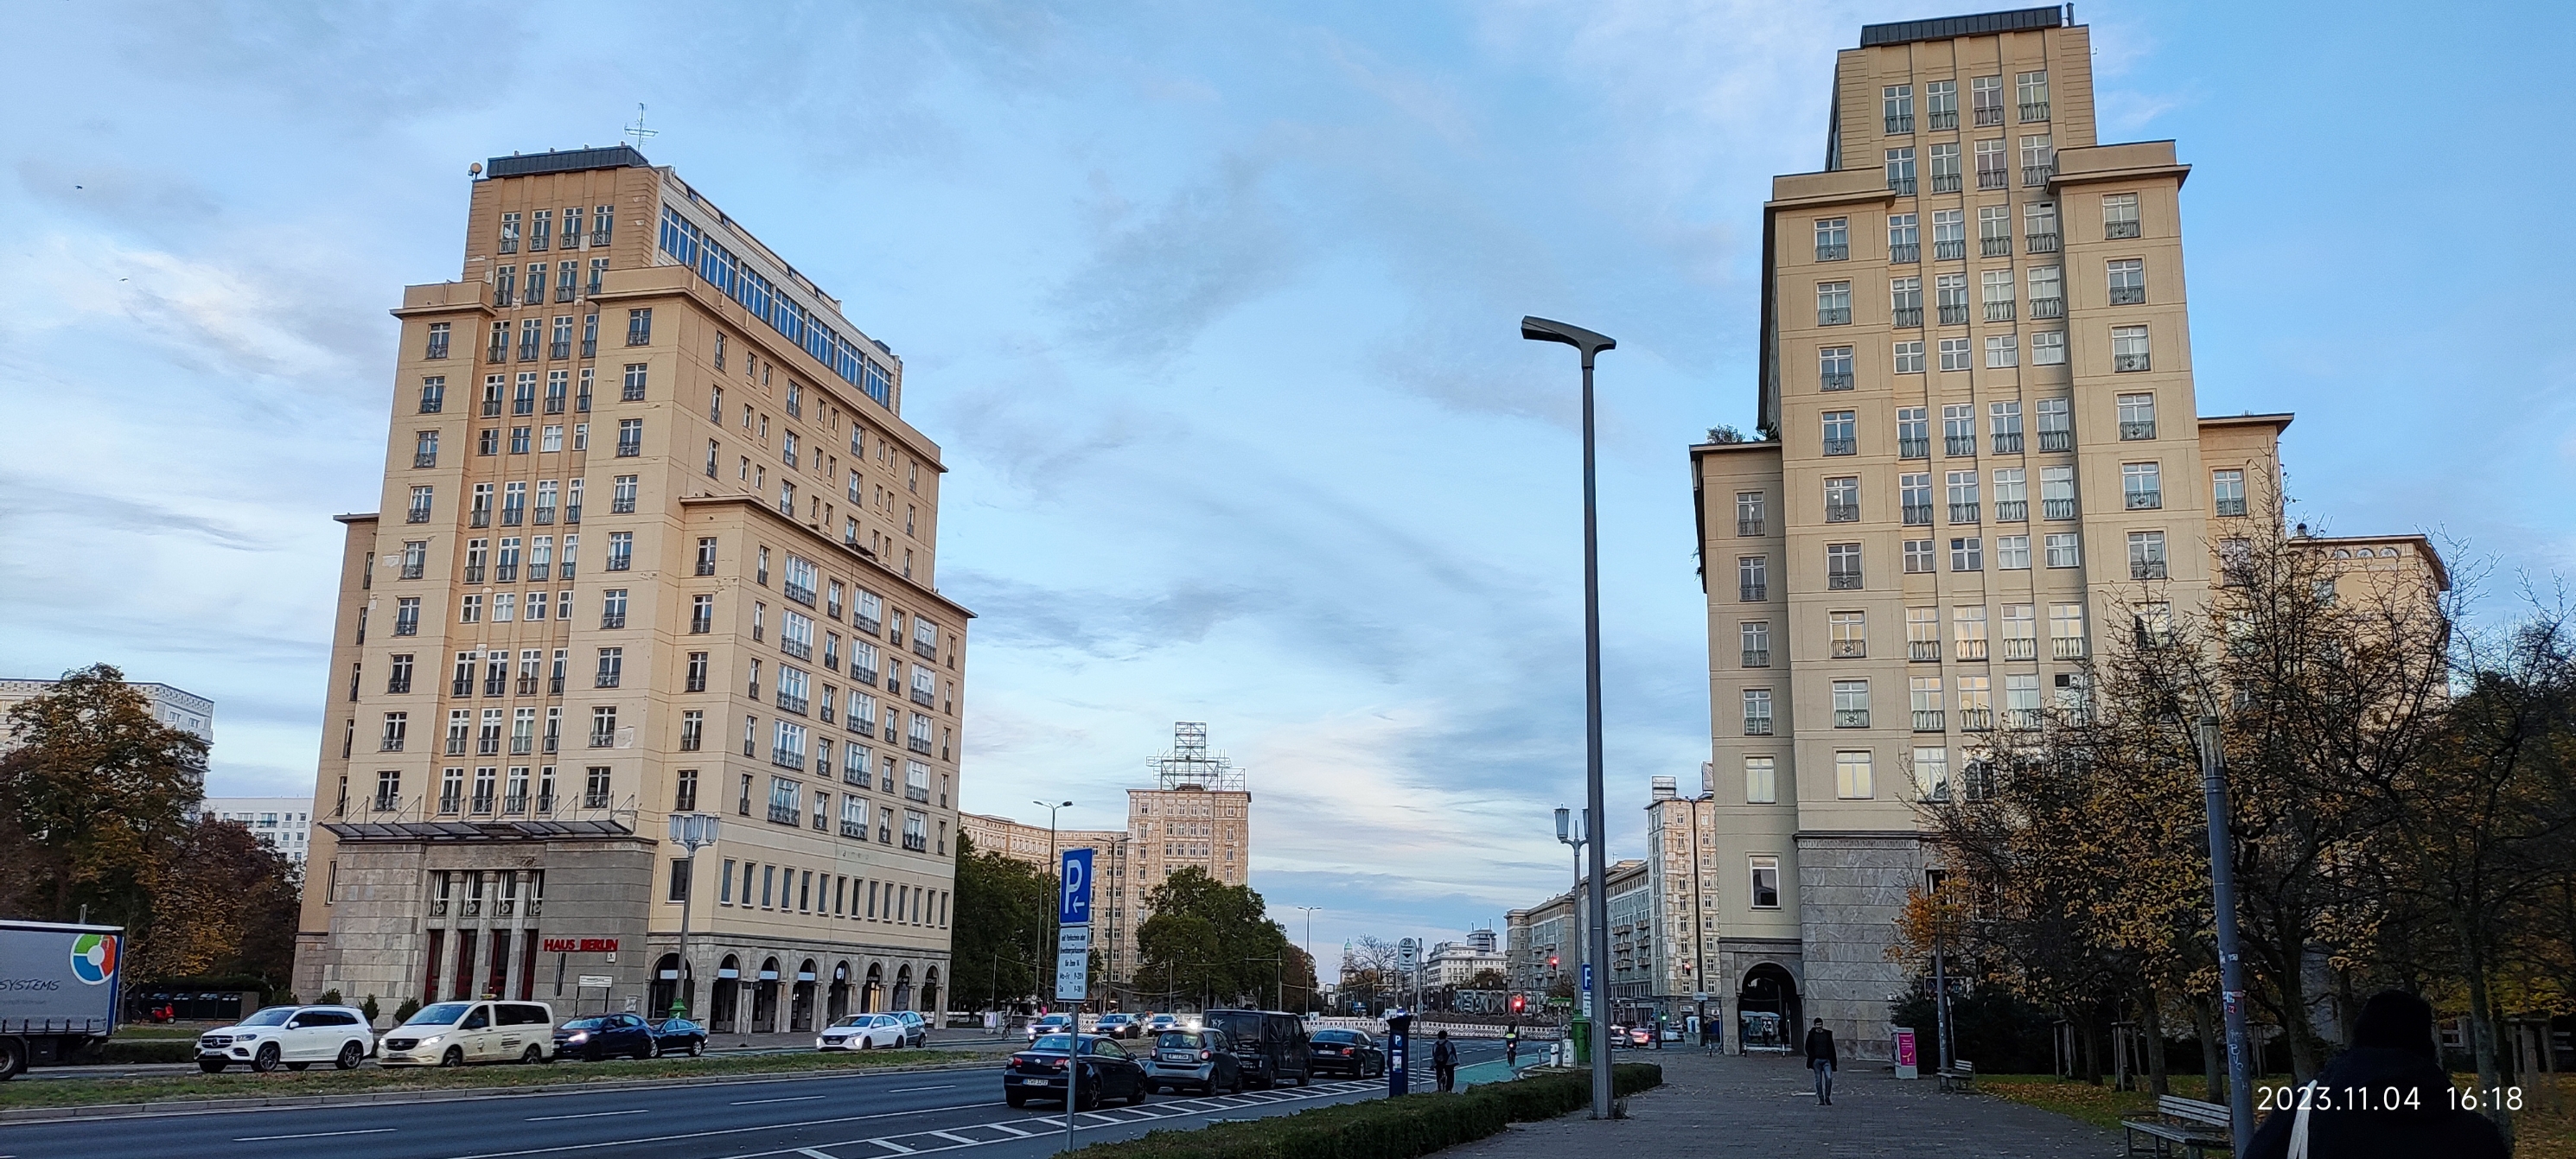 卡尔马克思大街是原东德的辖区，大街两边的大厦都是对称的，外形高度结构都一模一样。像极了莫斯科的苏联时